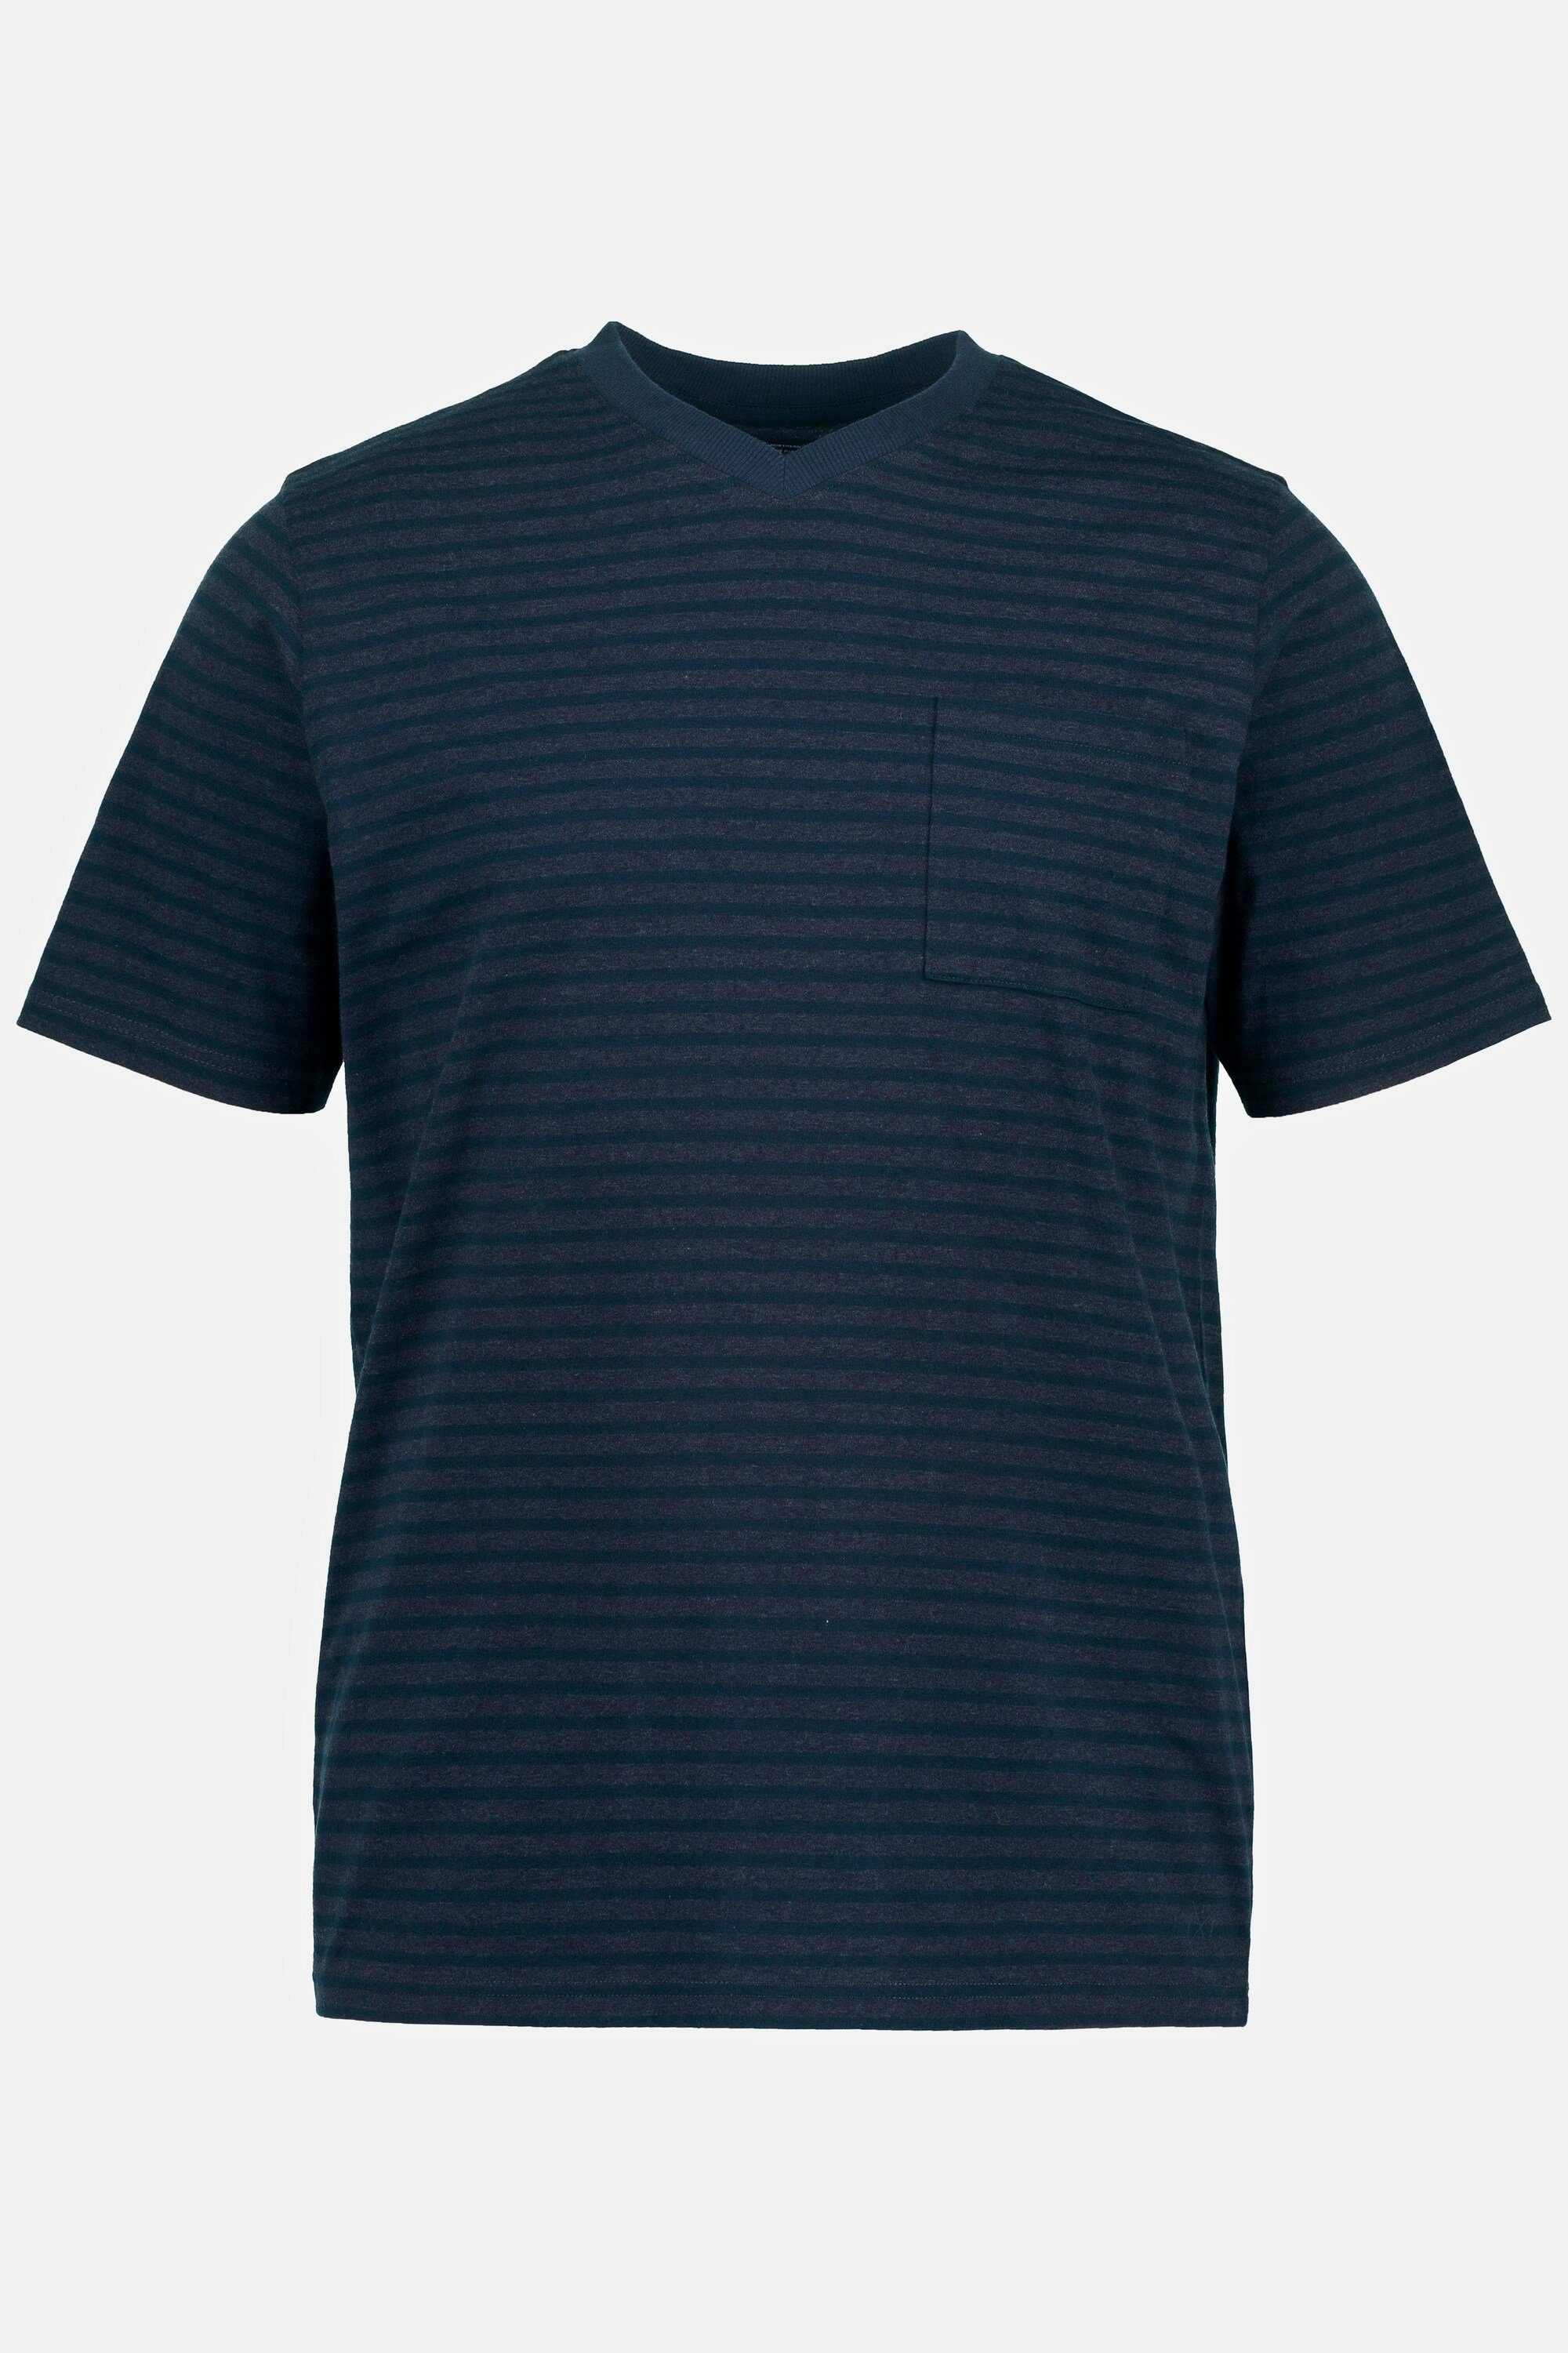 JP1880 Schlafanzug Schlafanzug Zweiteiler T-Shirt Ringeln mit